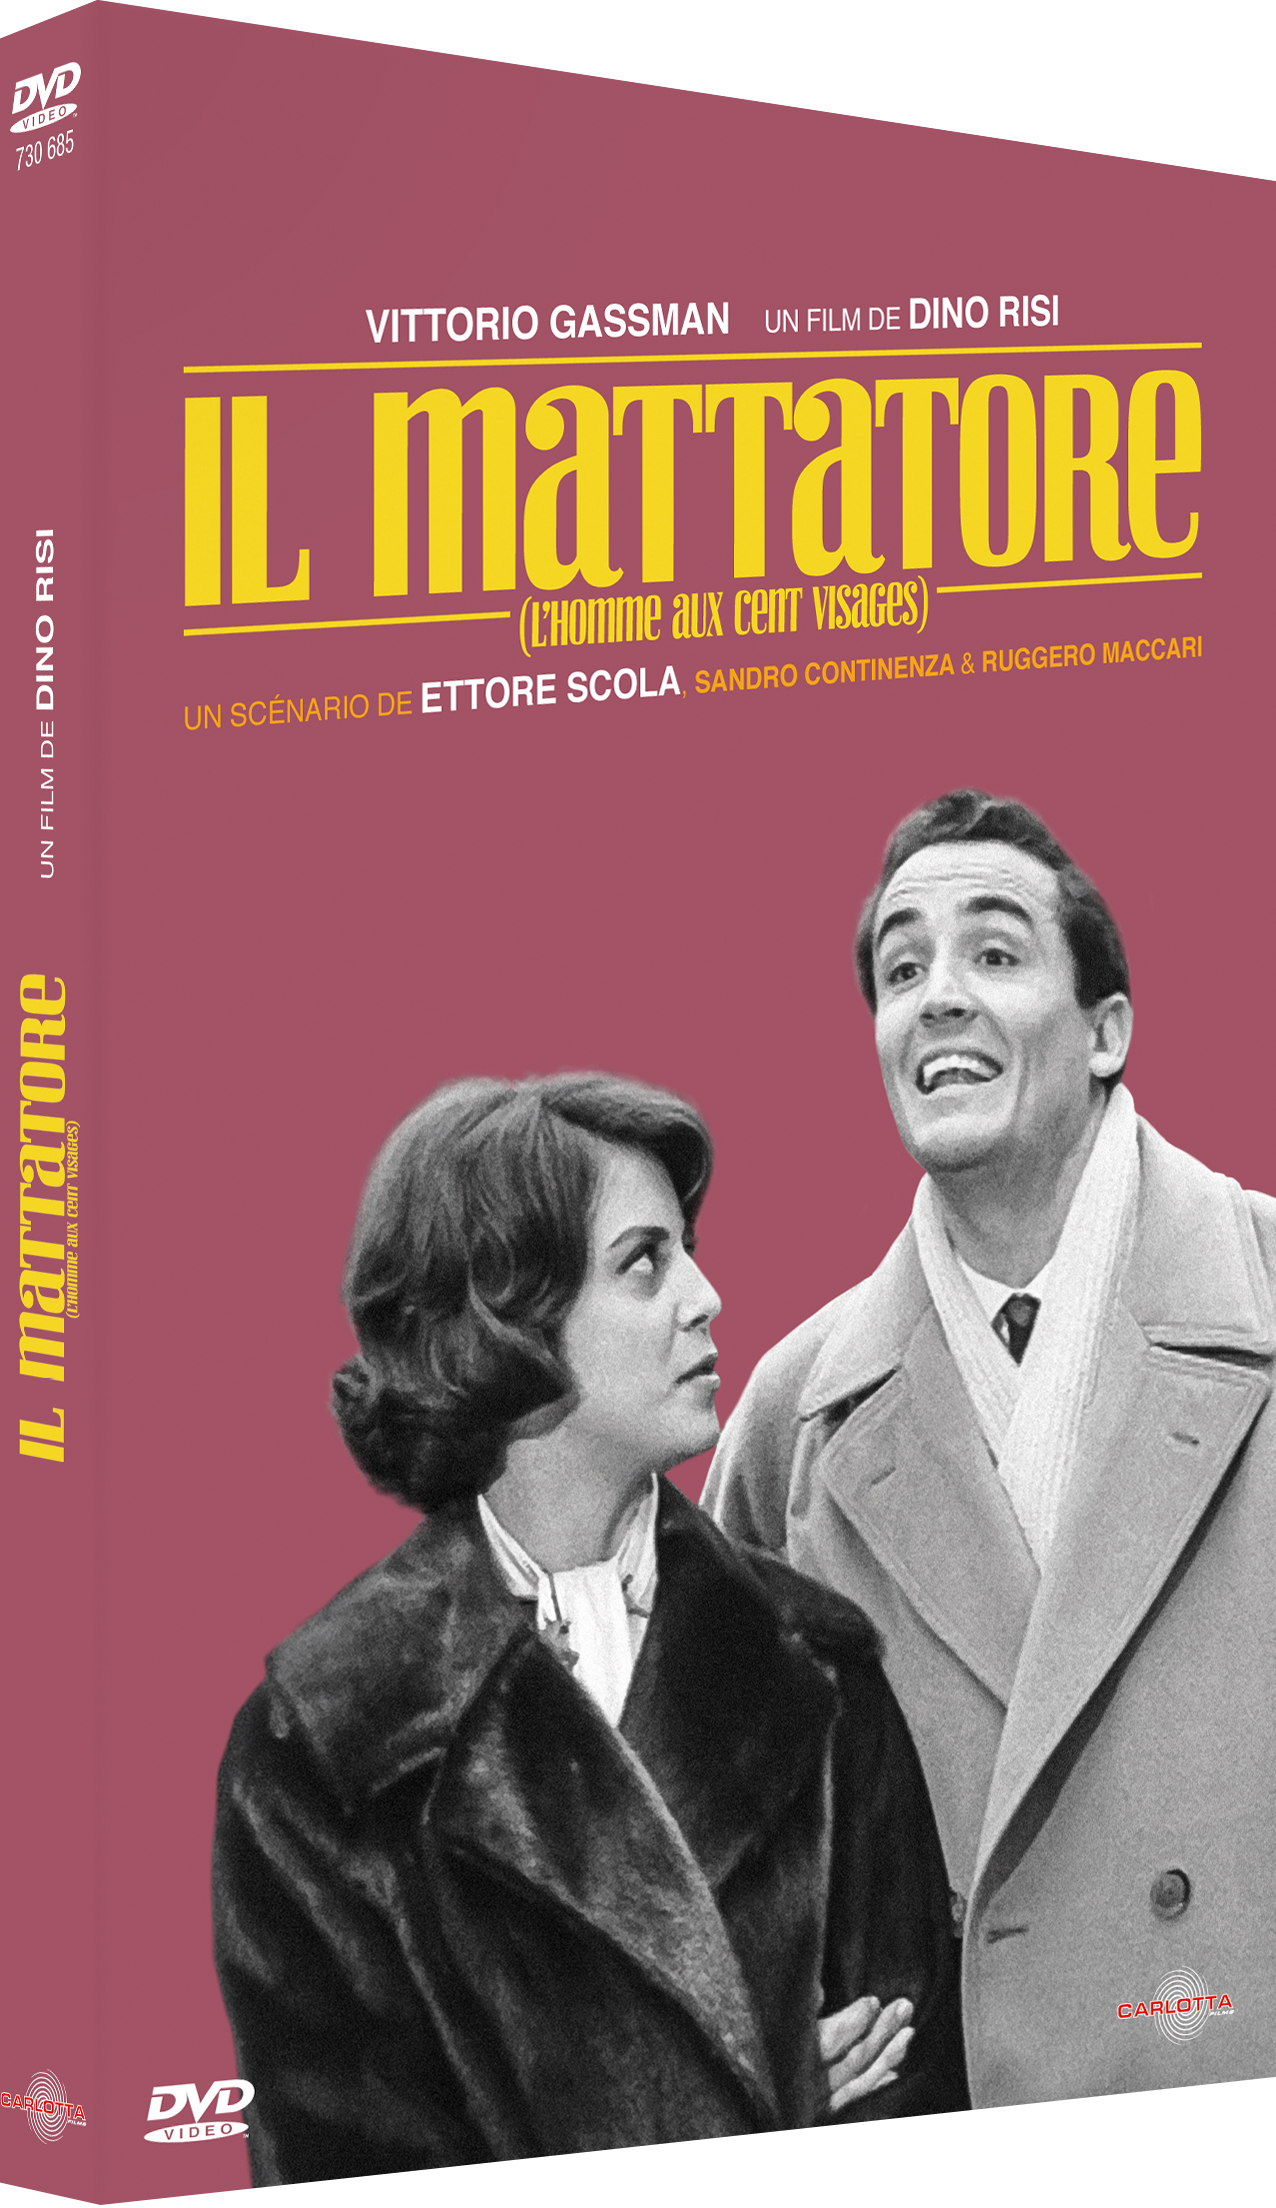 Il Mattatore de Dino Risi - Carlotta Films - La Boutique